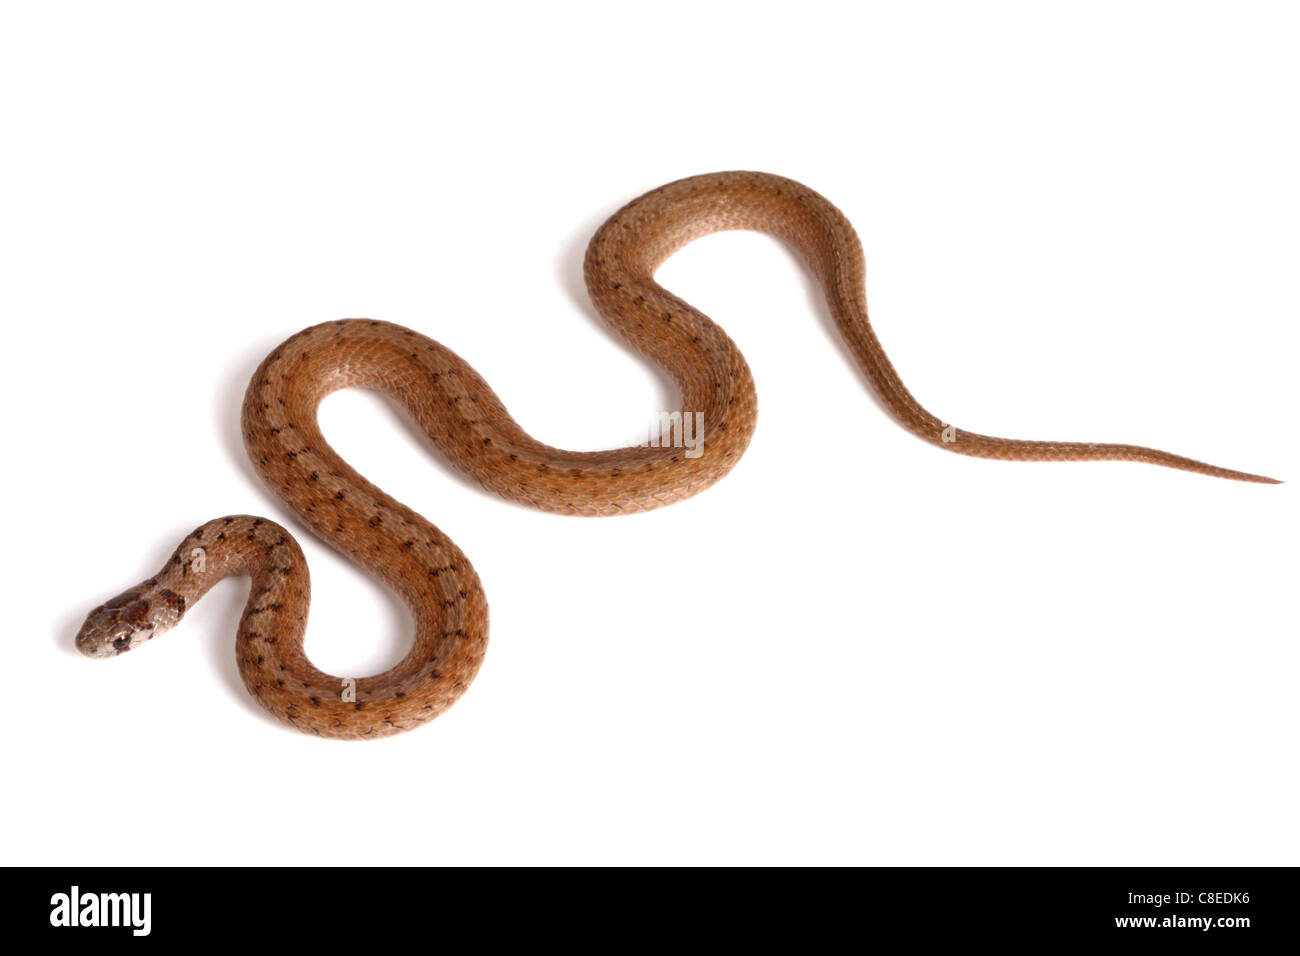 Un adulte le nord du serpent brun (Storeria dekayi) forme des courbes en forme de S sur un fond blanc Banque D'Images